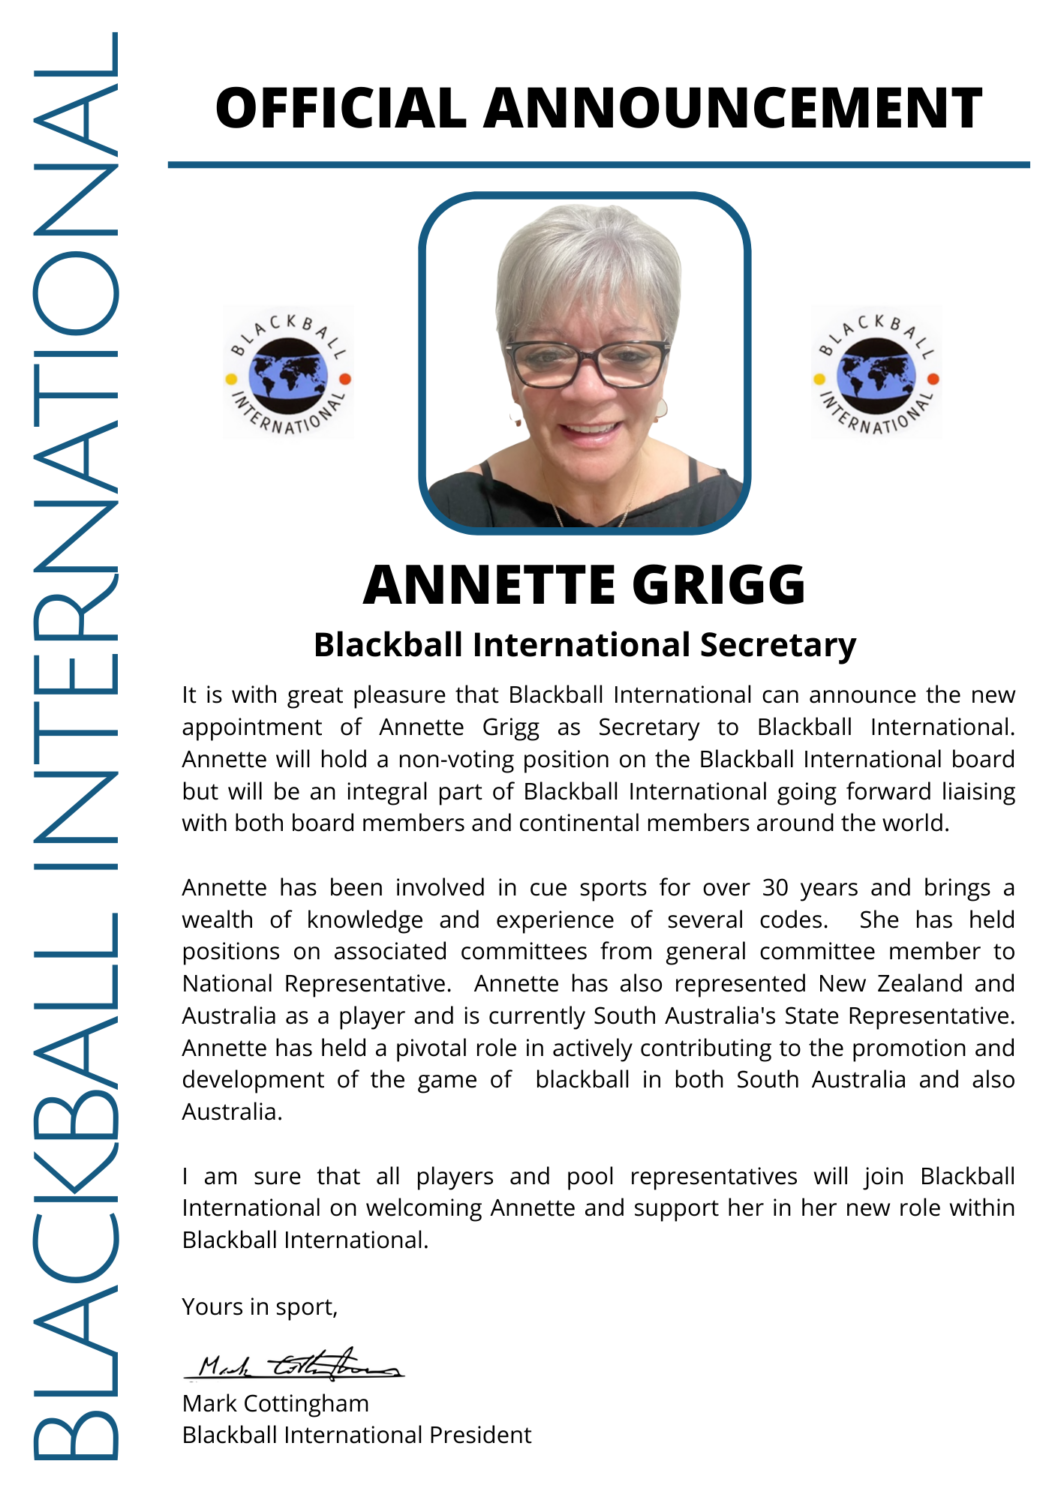 Annette Grigg Blackball International Secretary